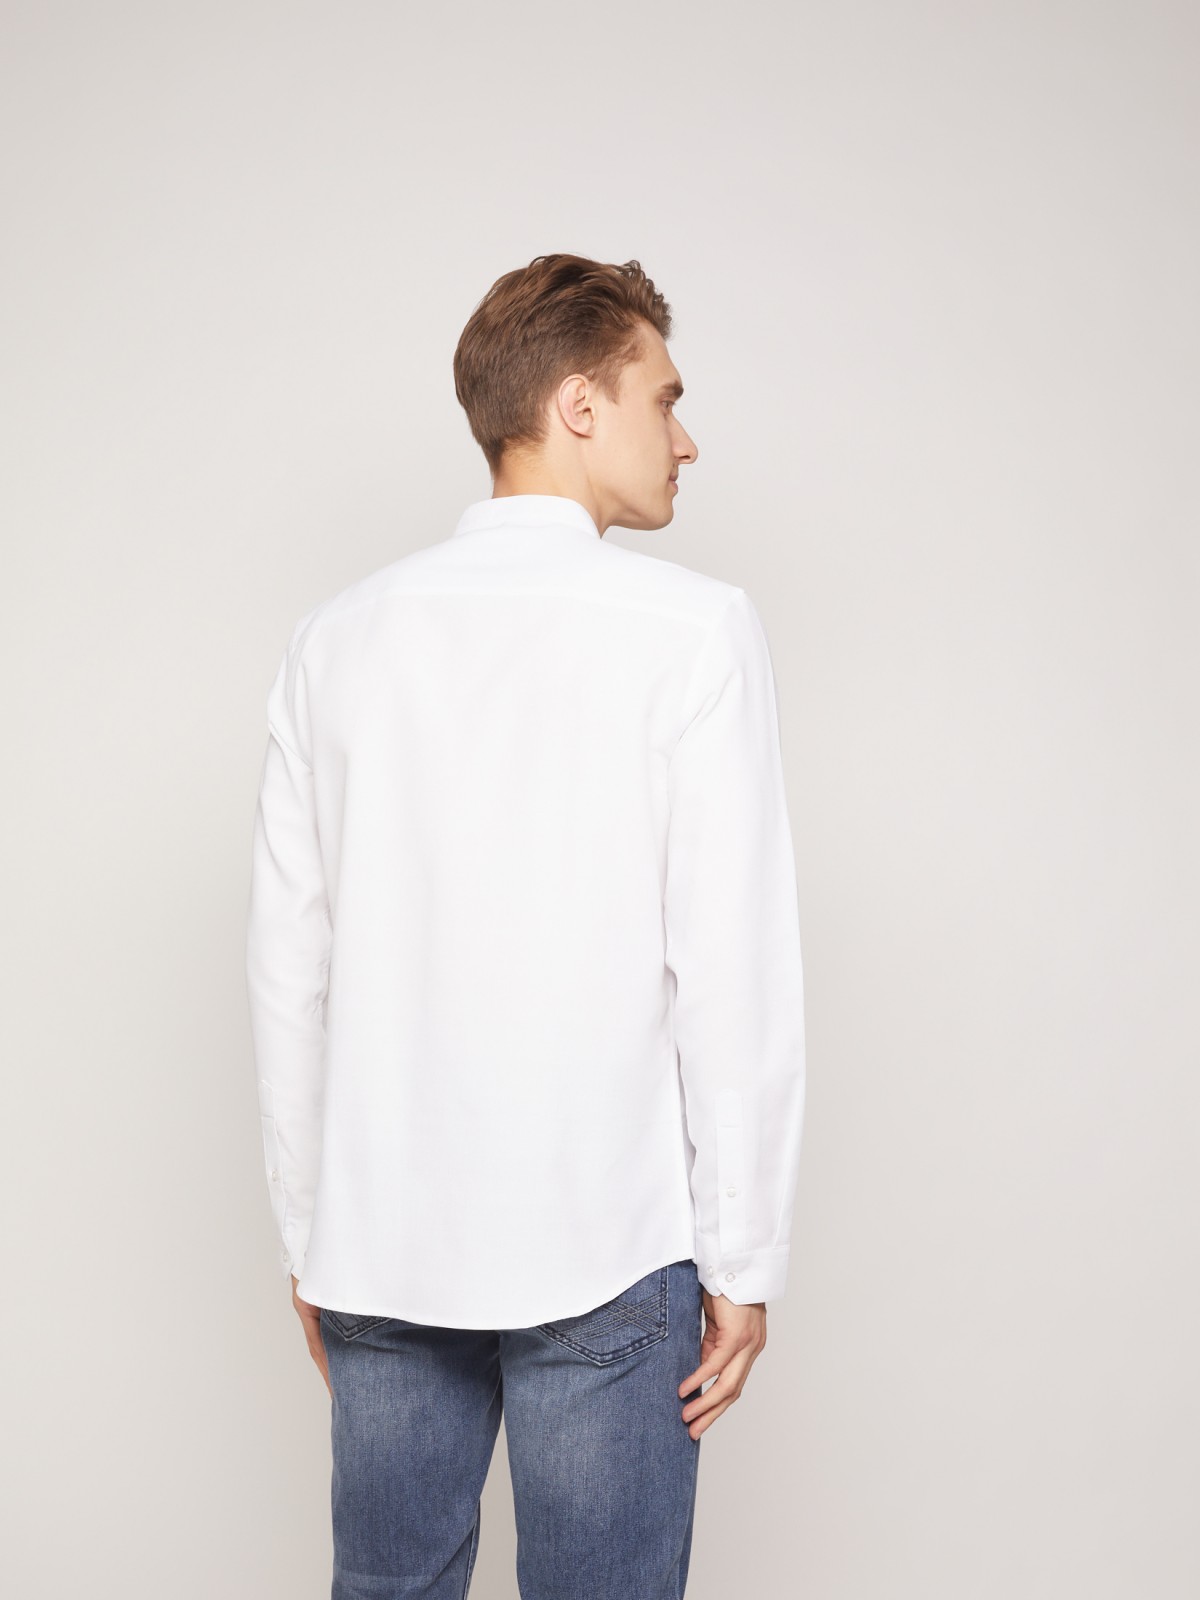 Рубашка с воротником-стойкой zolla 011322159053, цвет белый, размер XS - фото 6